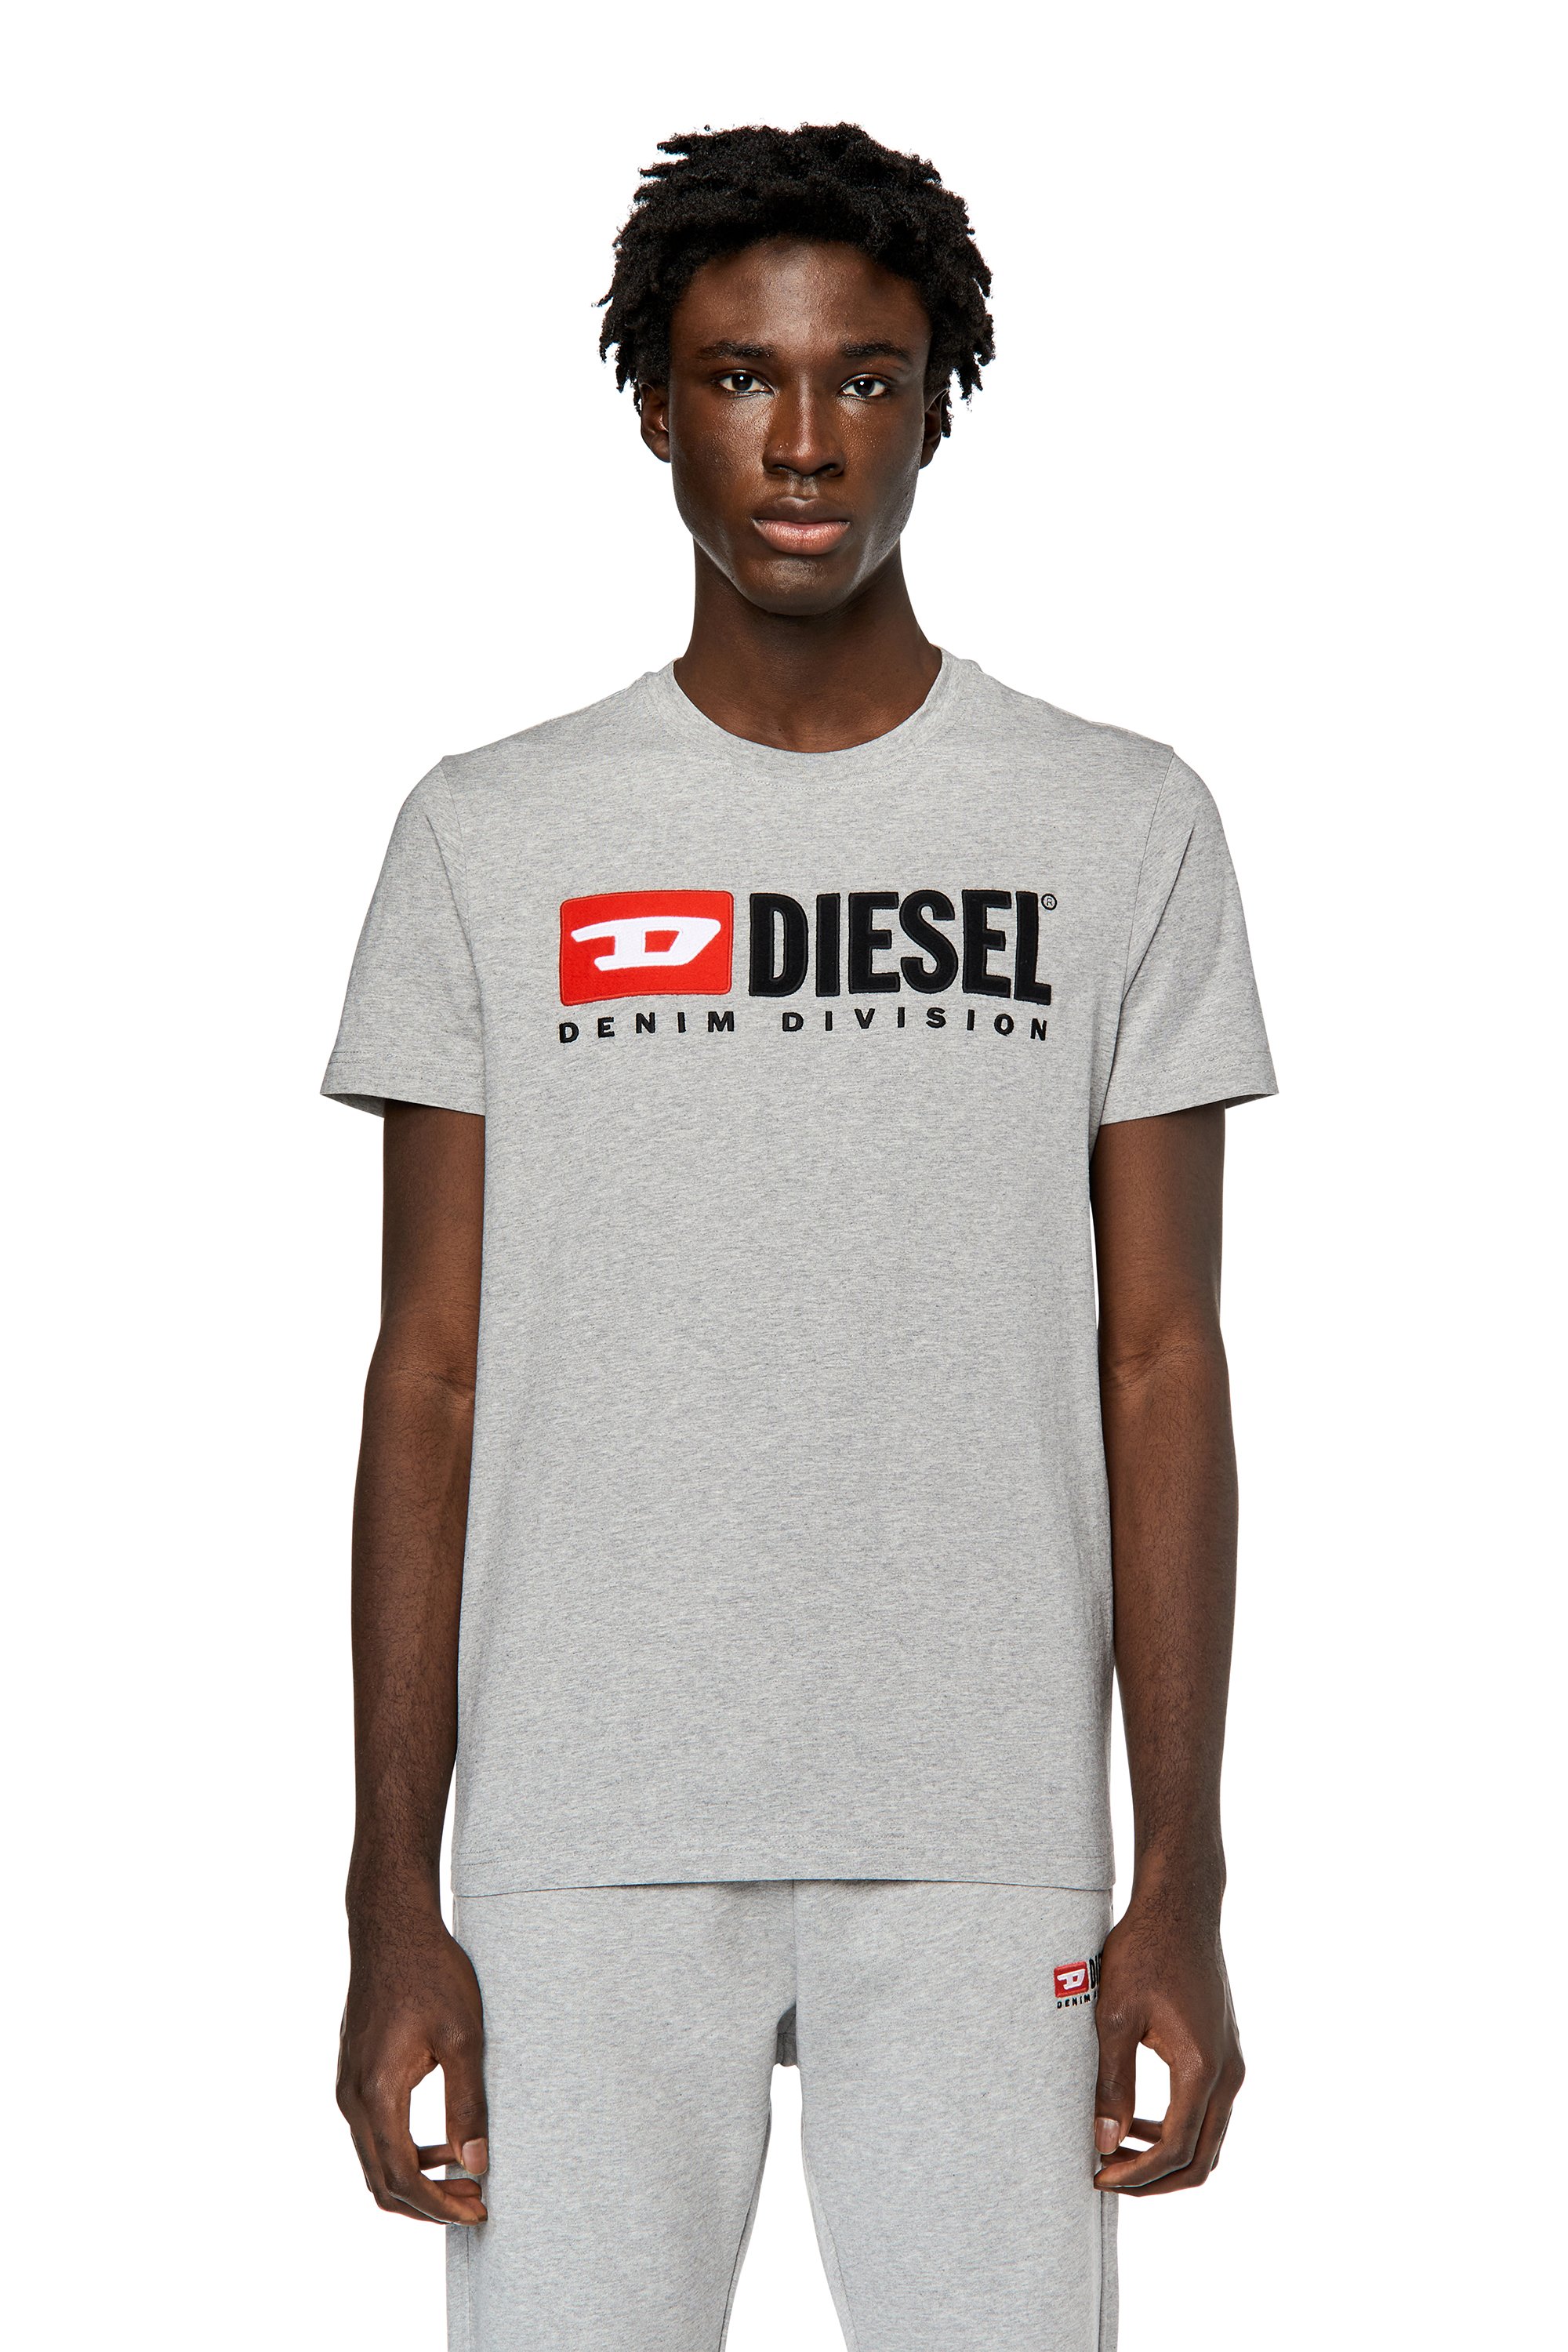 Diesel - T-DIEGOR-DIV, Gris - Image 1